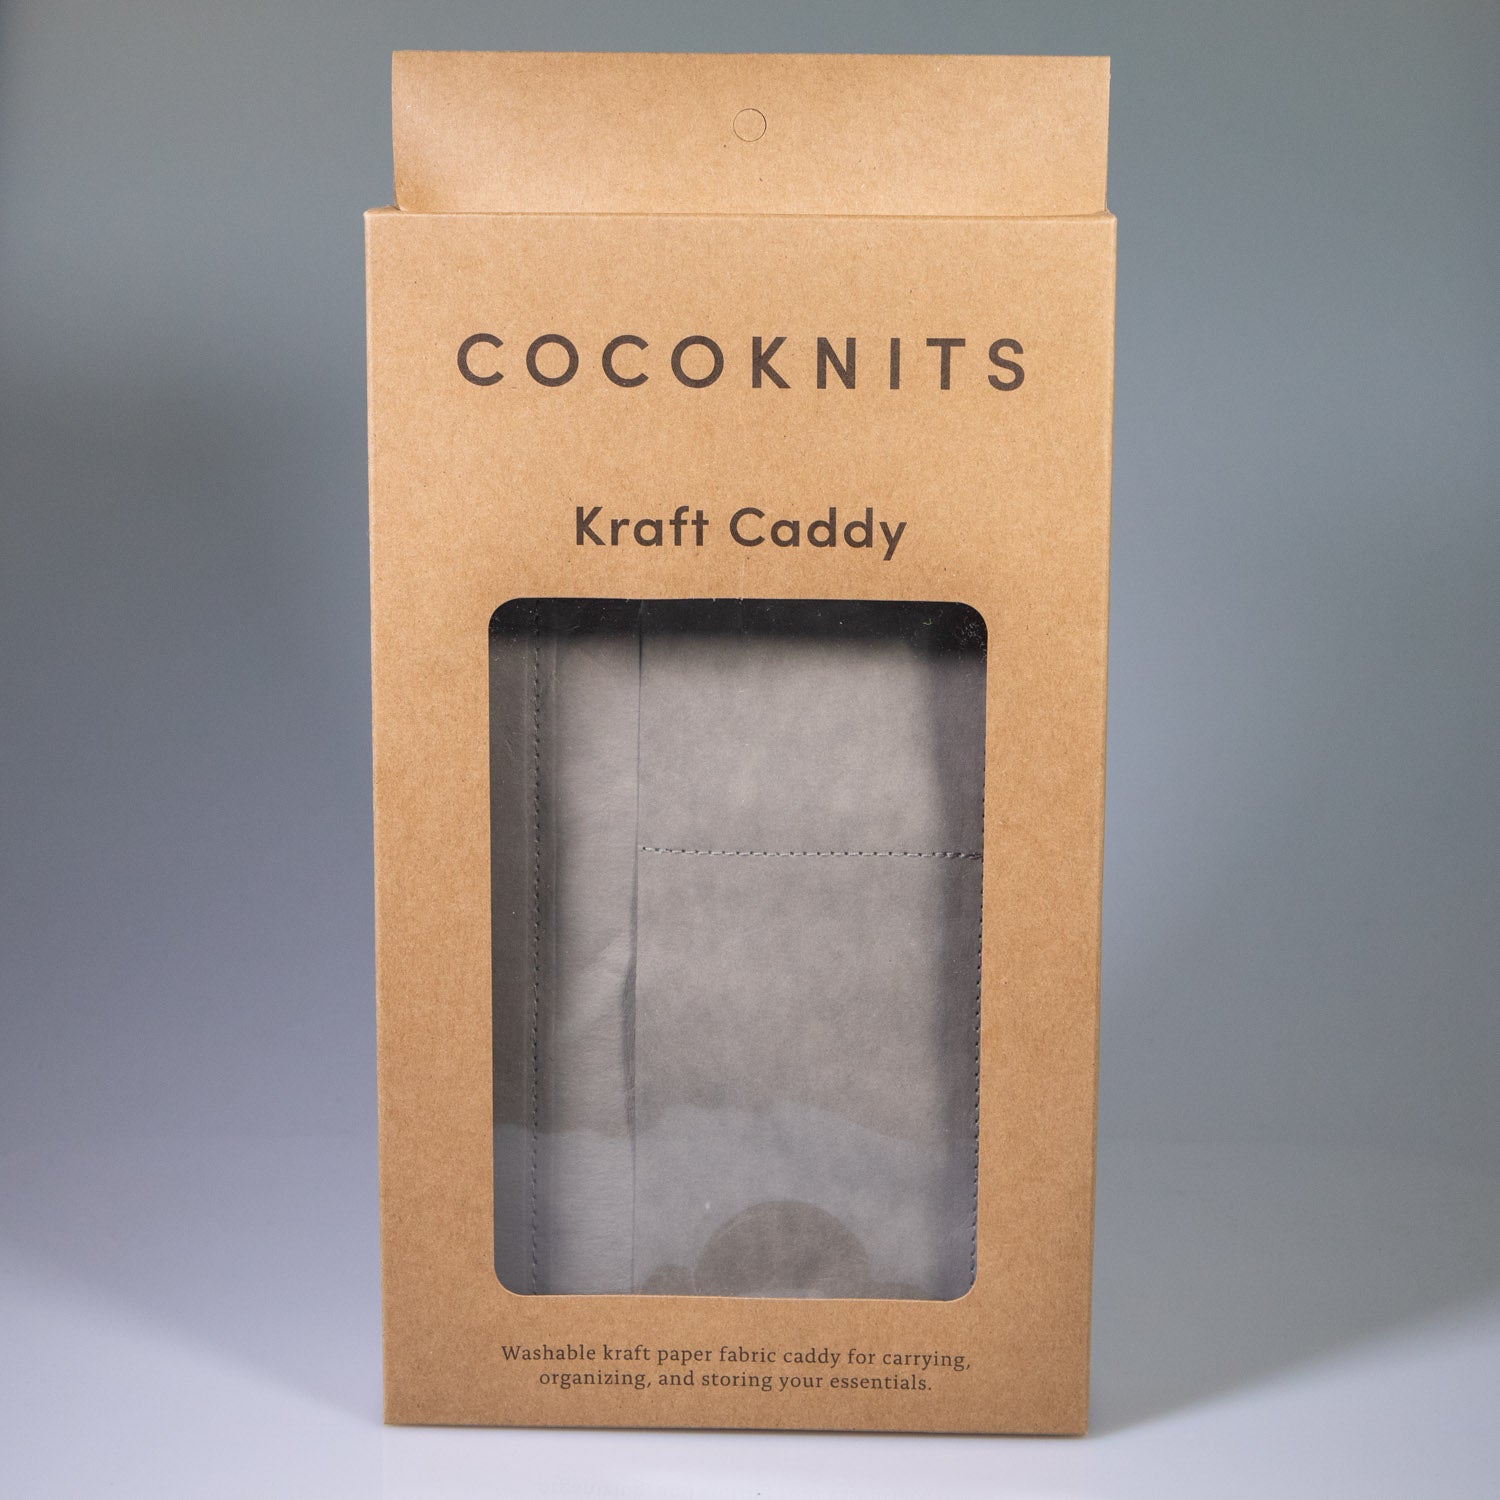 Cocoknits Kraft Caddy